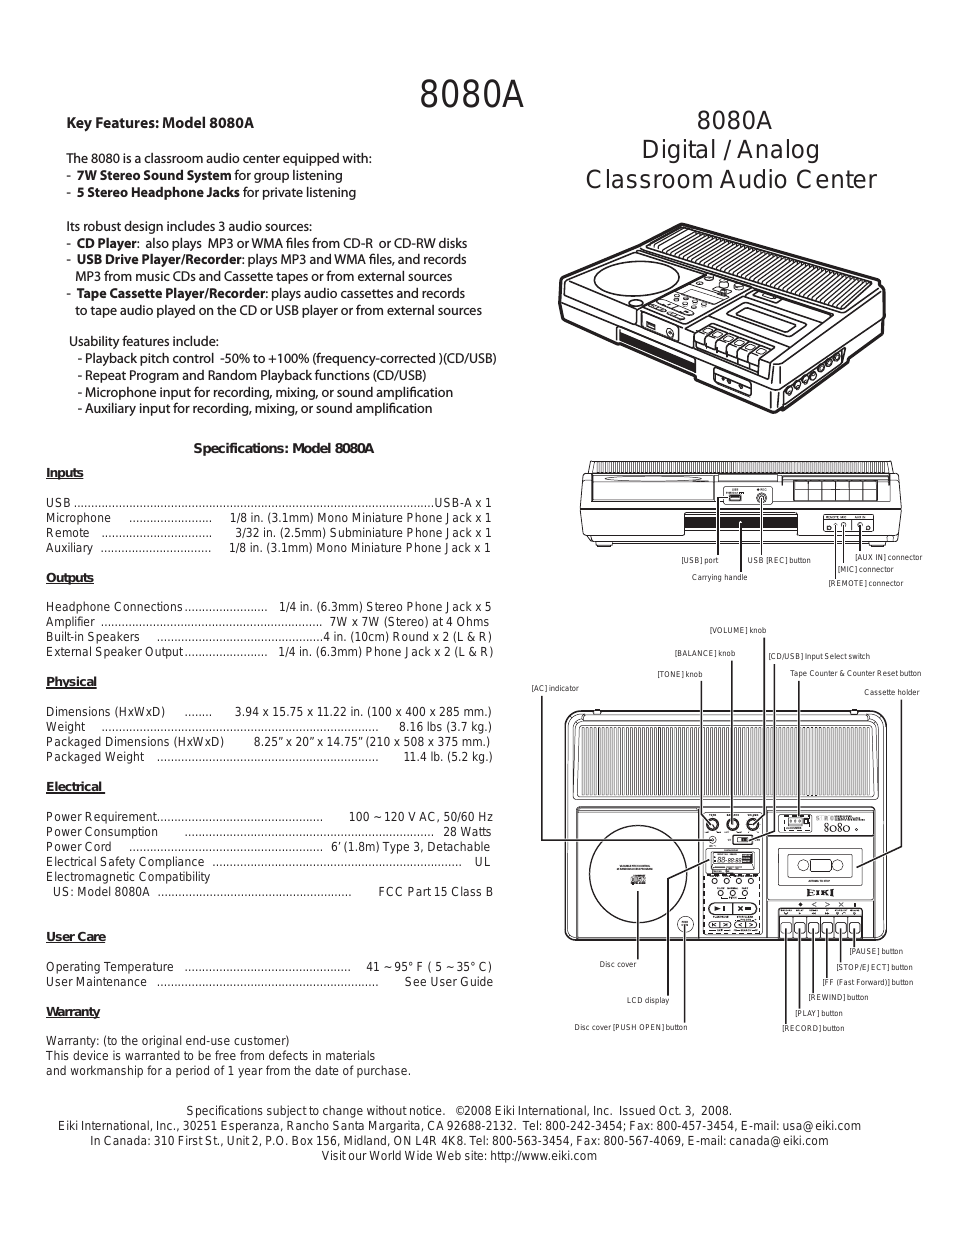 Digital / Analog Classroom Audio Center 8080A